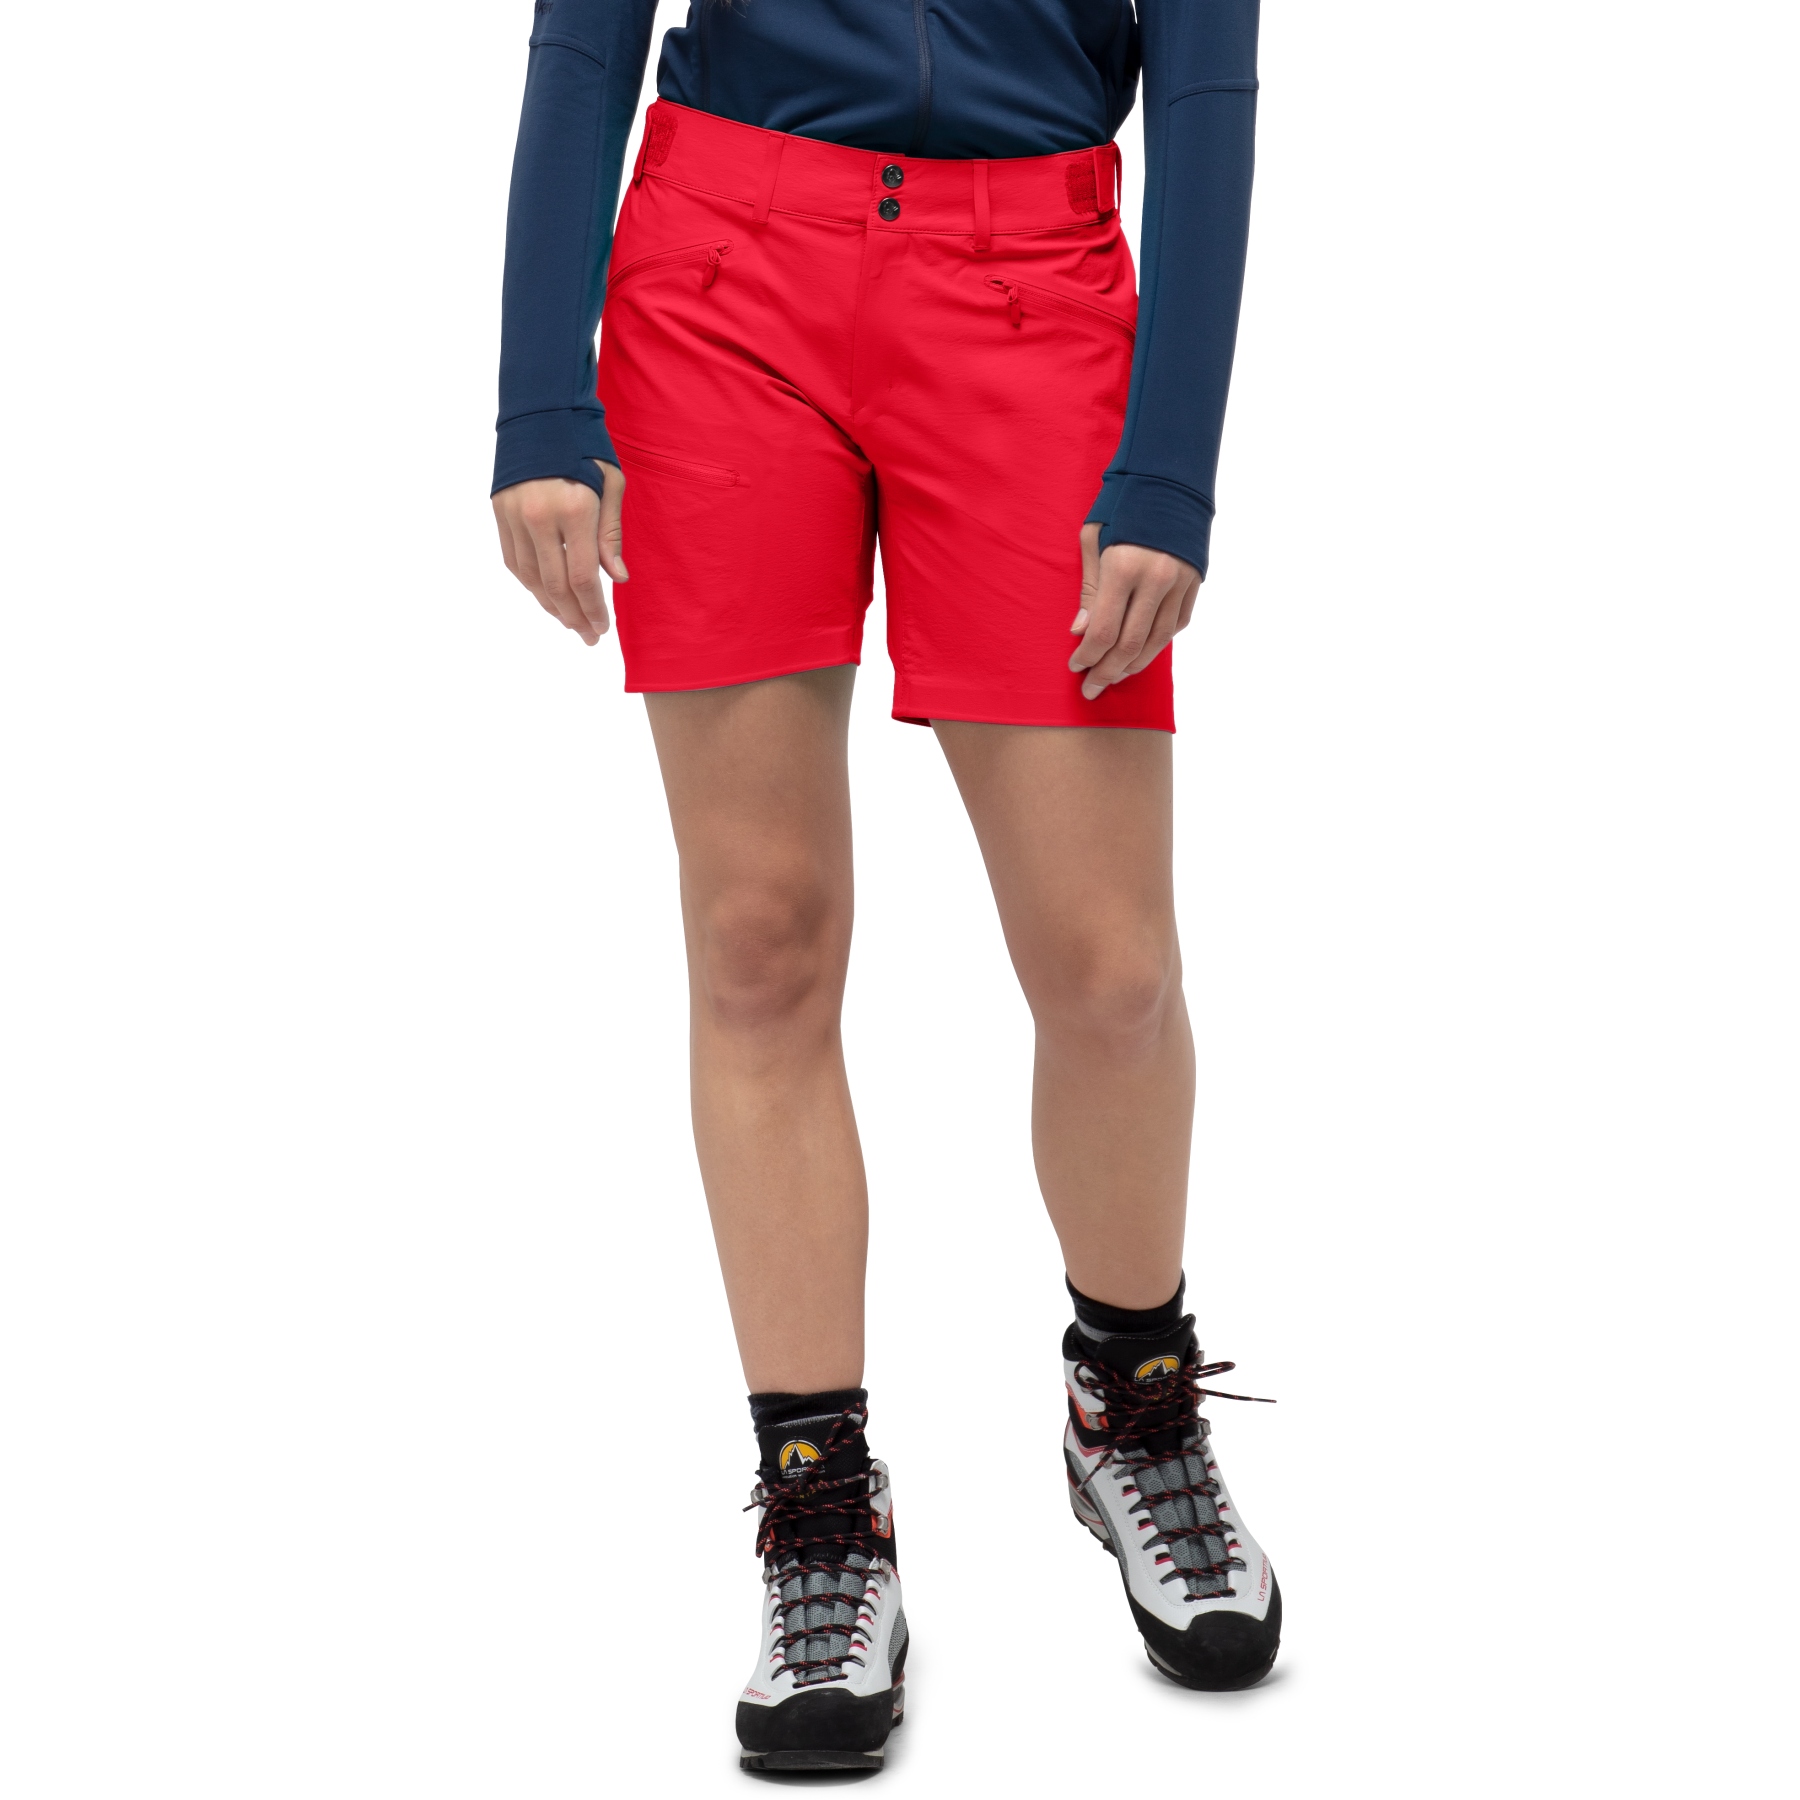 Produktbild von Norrona falketind flex1 Shorts Damen - True Red